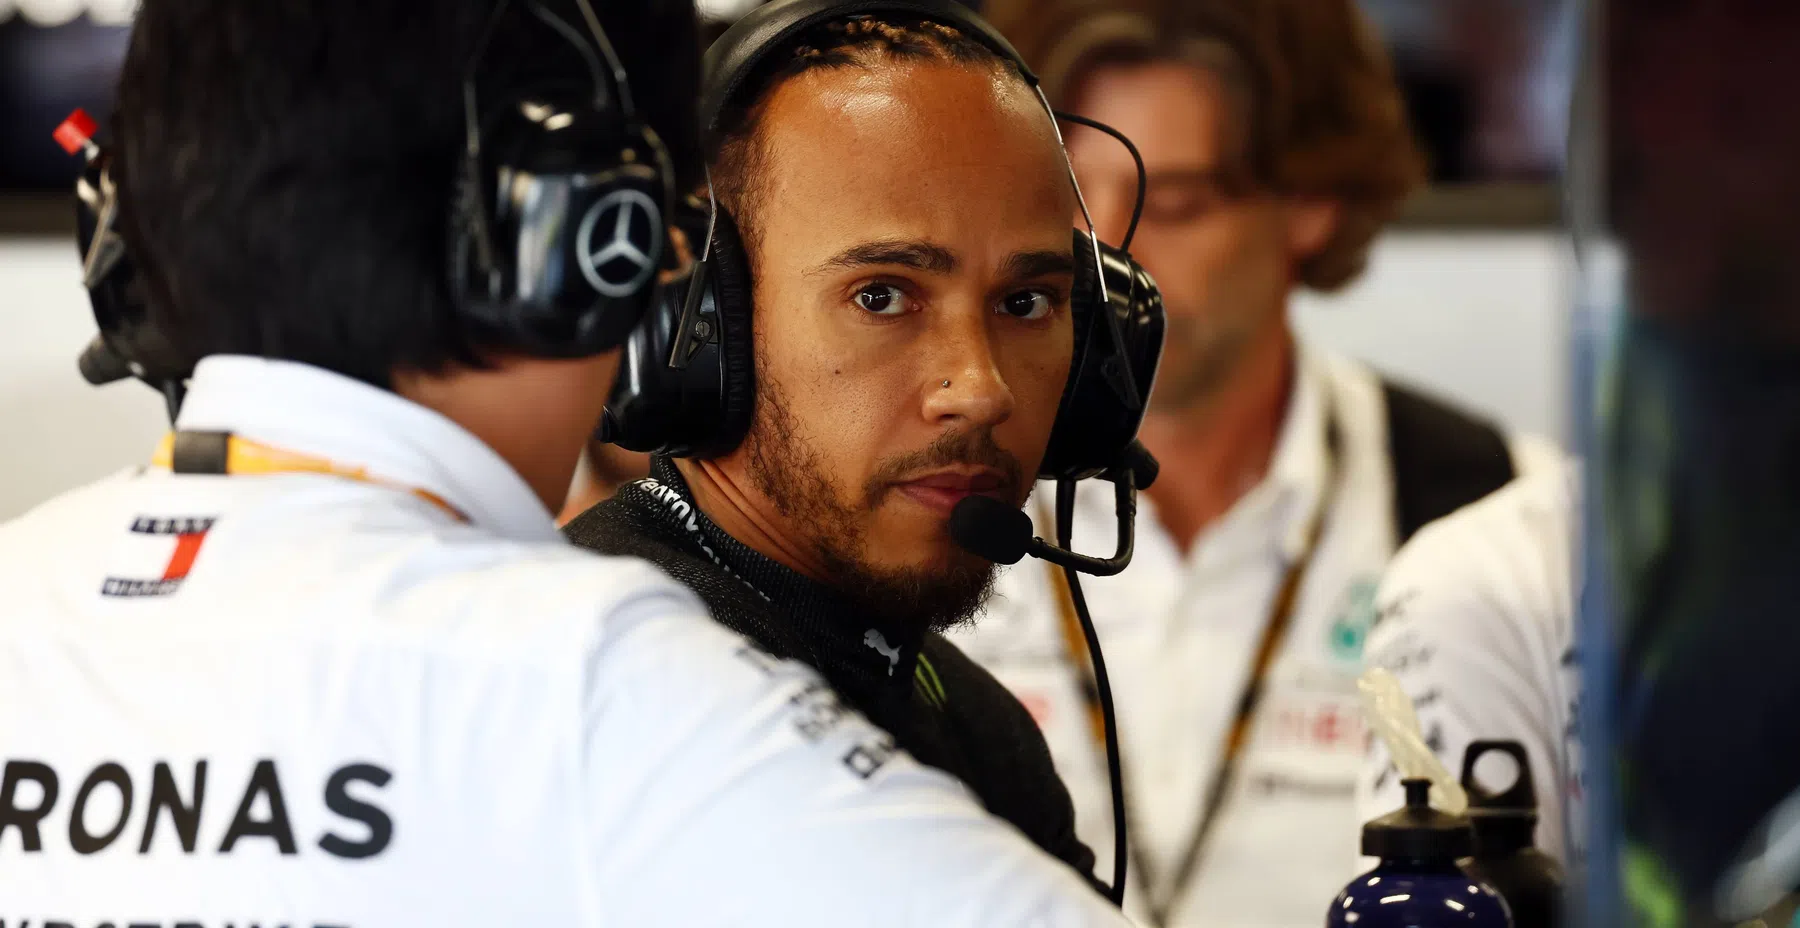 Hamilton dankbar trotz schwierigem Jahr in der F1